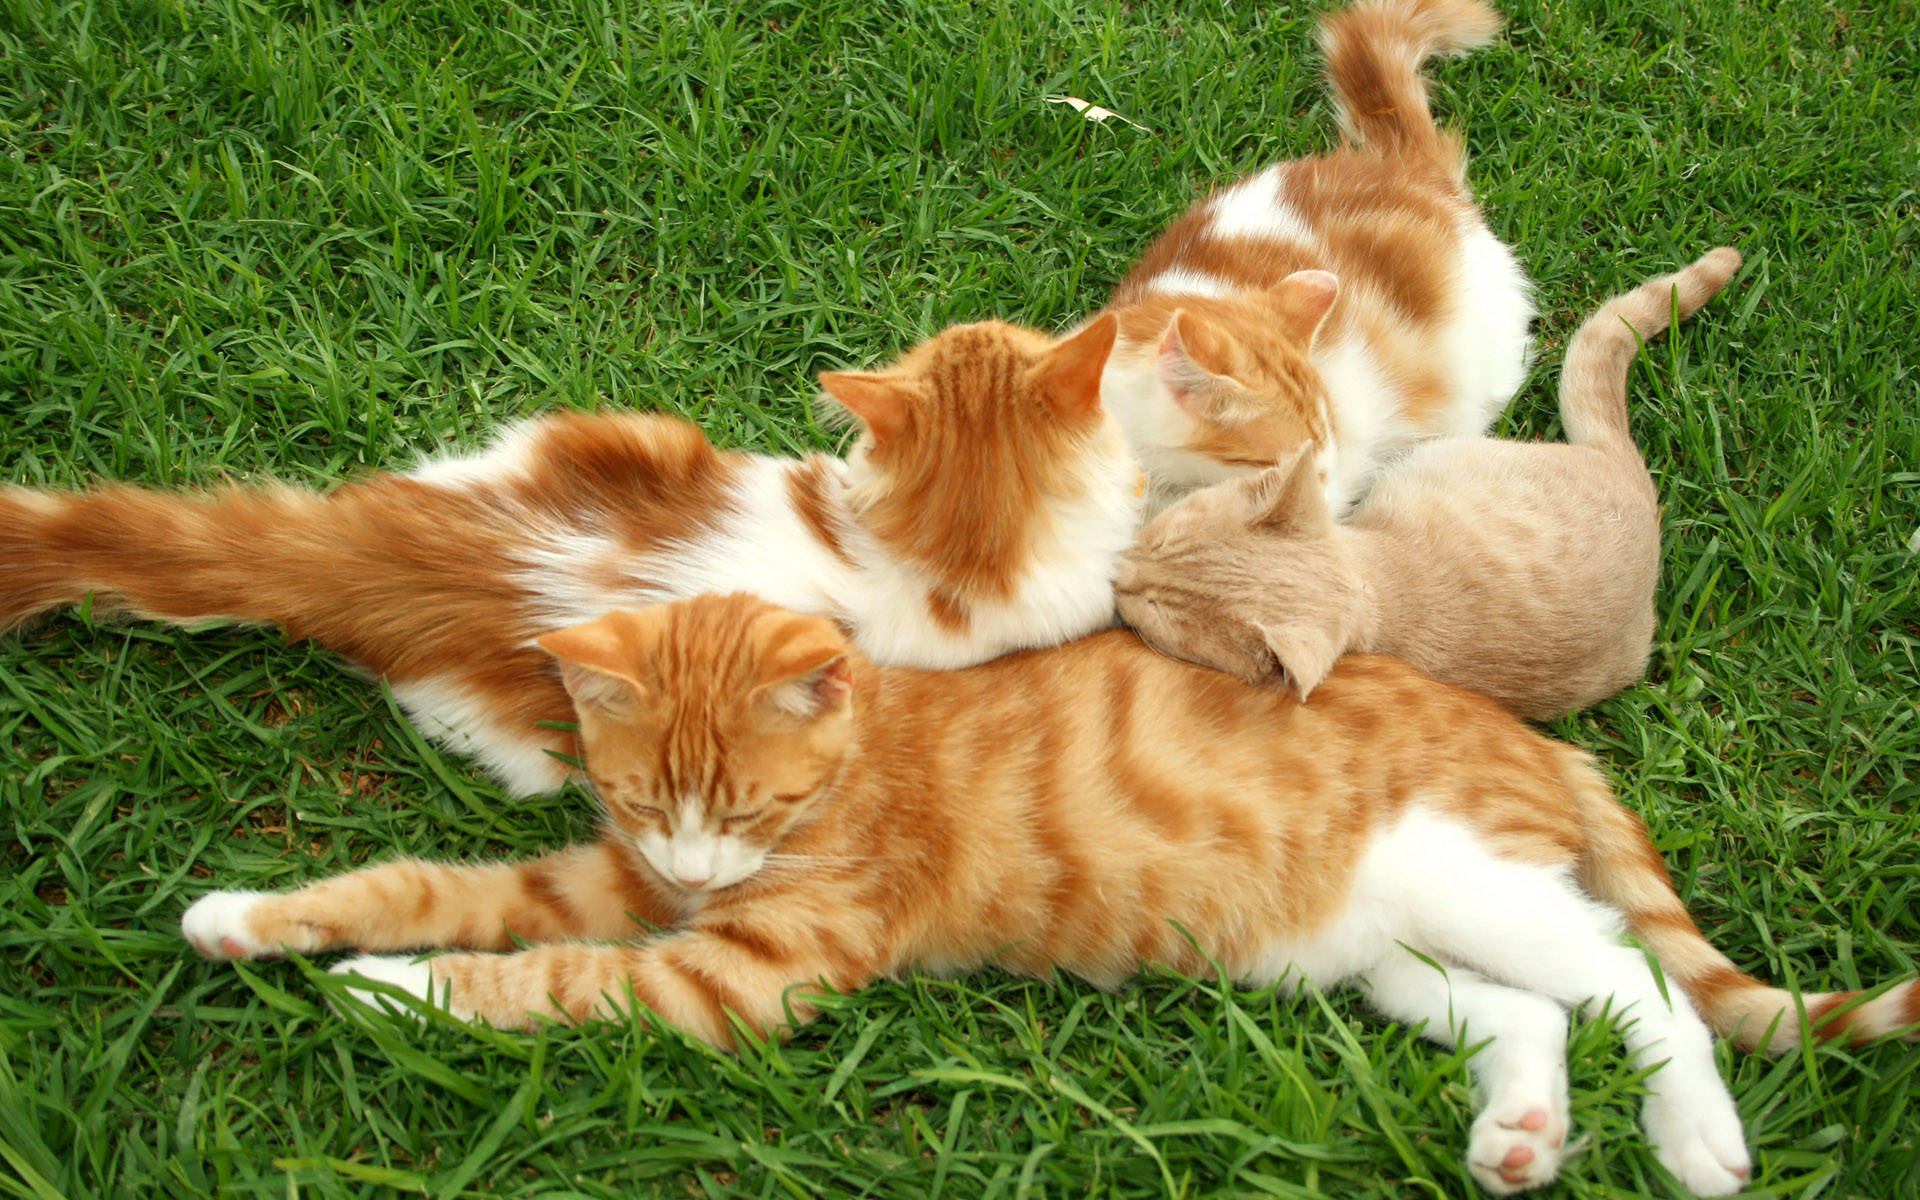 Kittens On The Grass